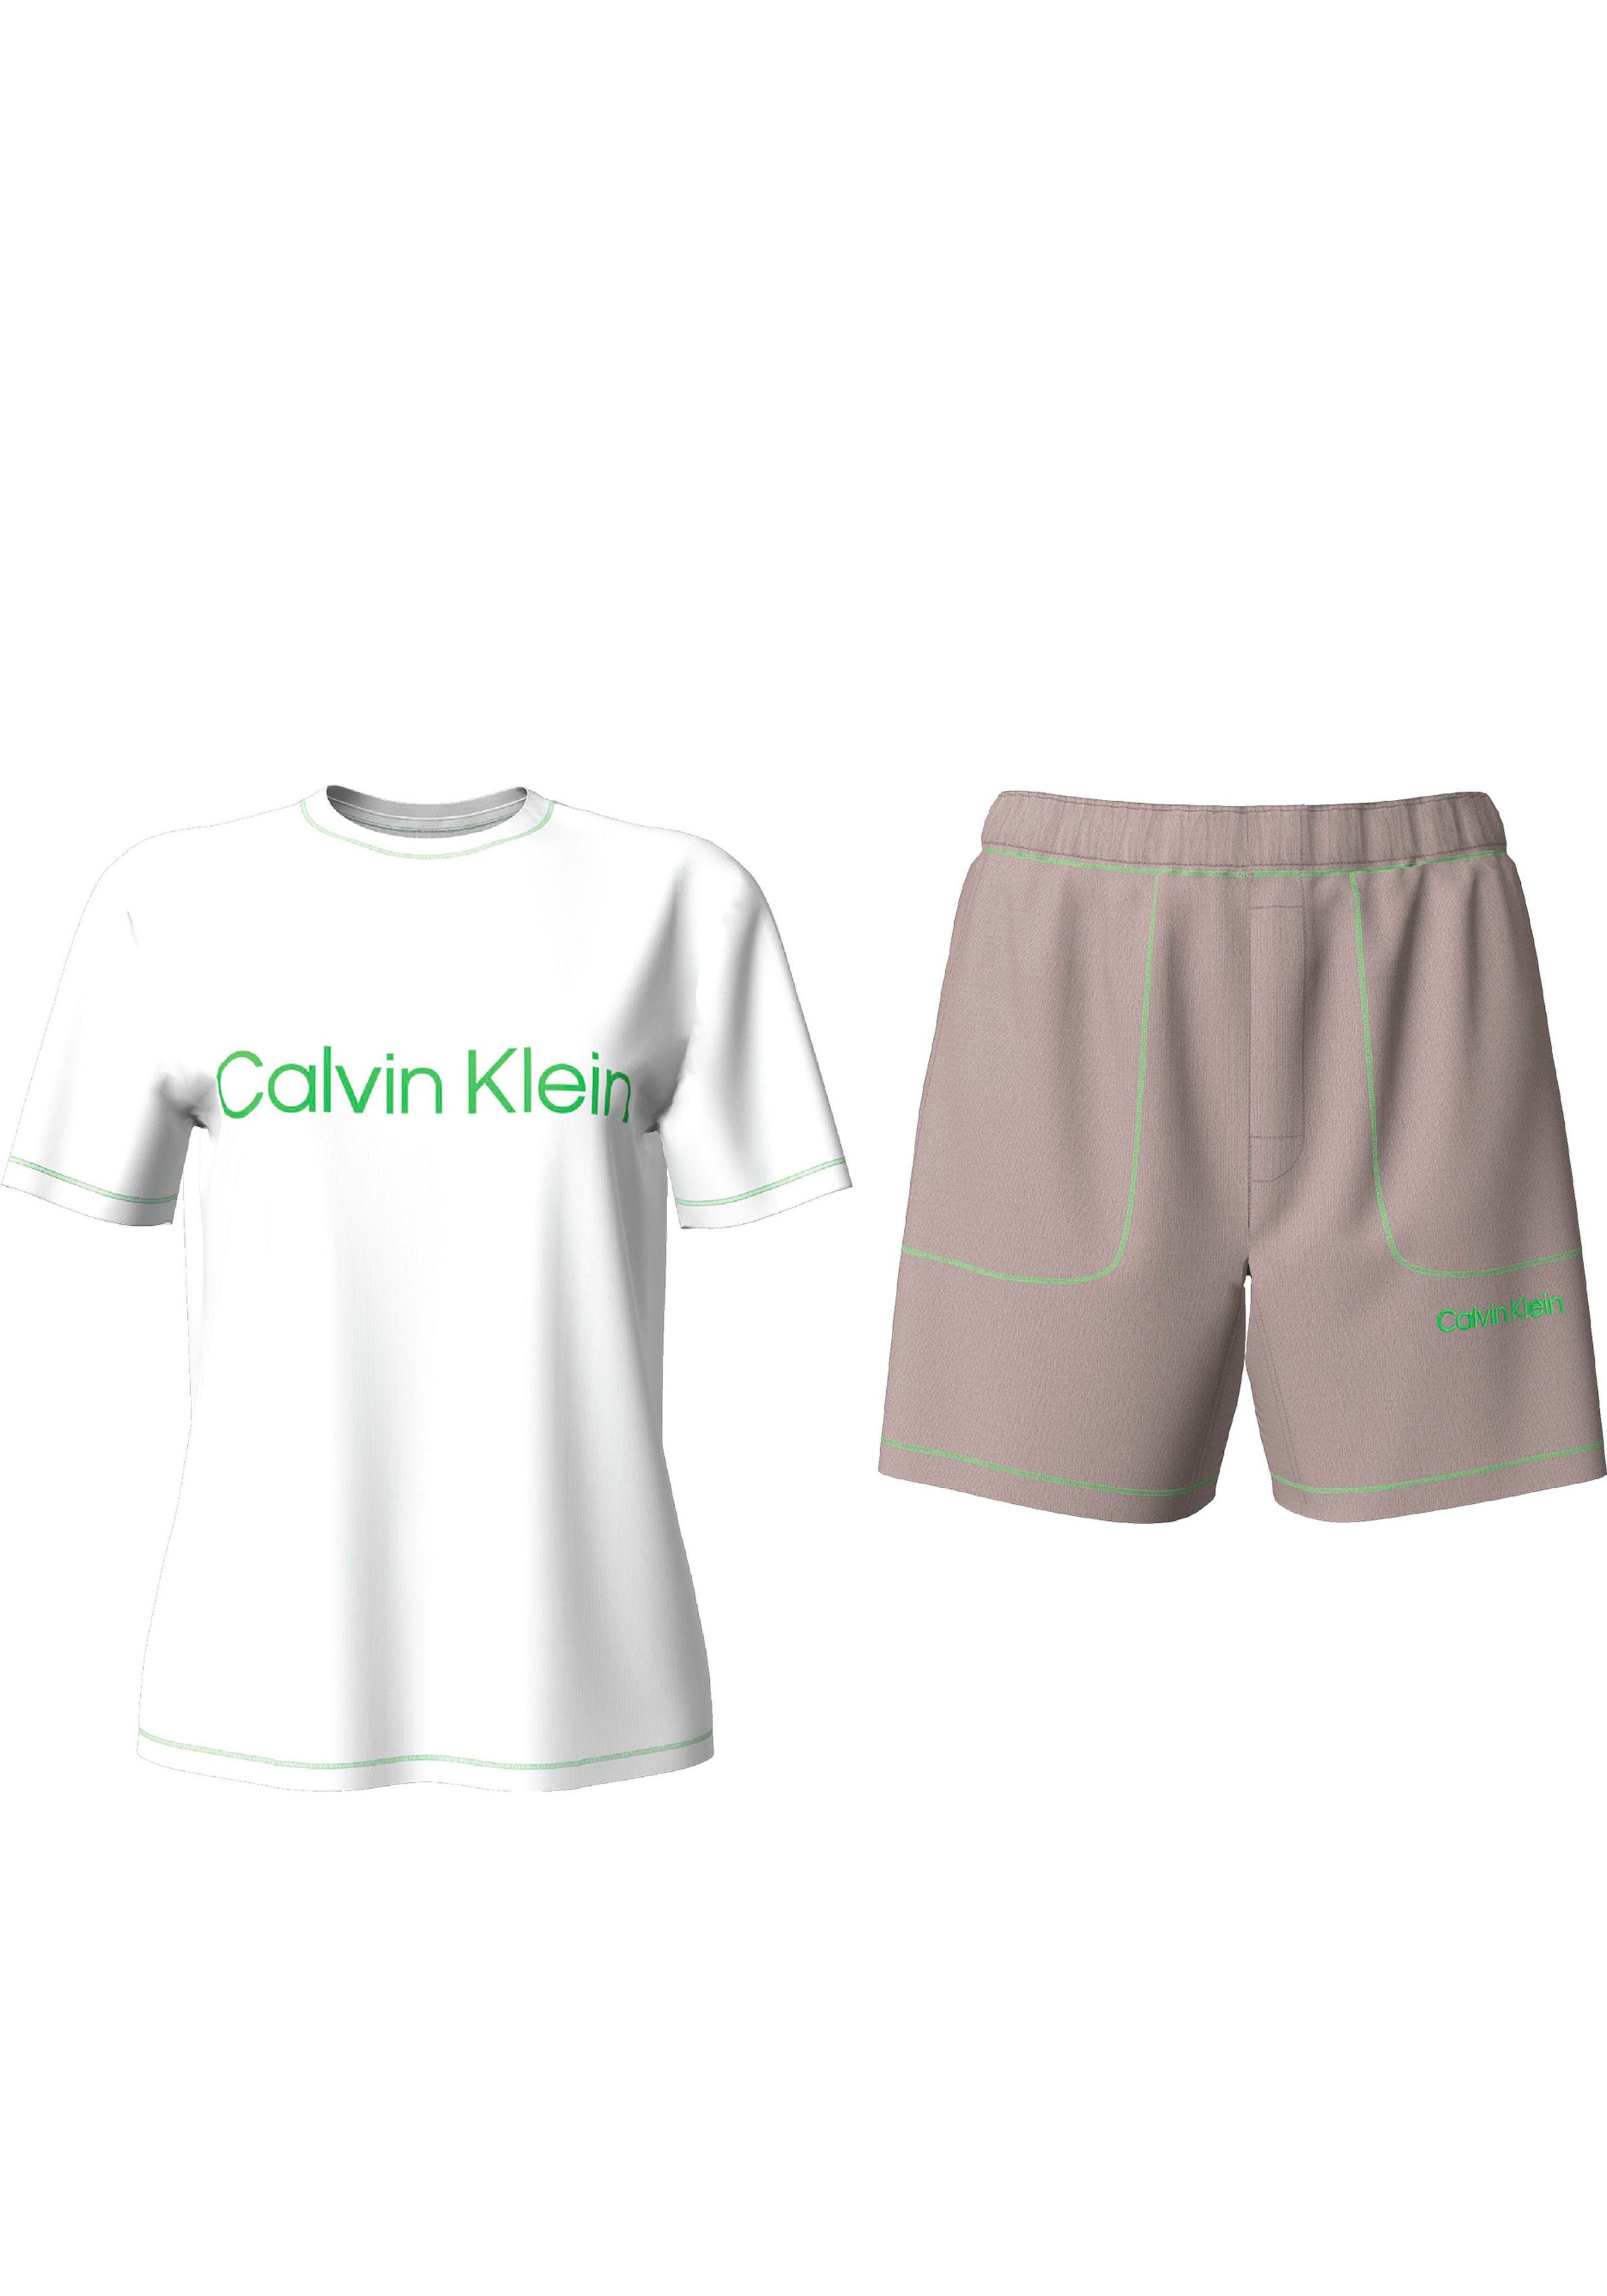 Calvin Klein Underwear Schlafanzug S/S SLEEP SET (2 tlg) mit Markenlabel | Pyjama-Sets